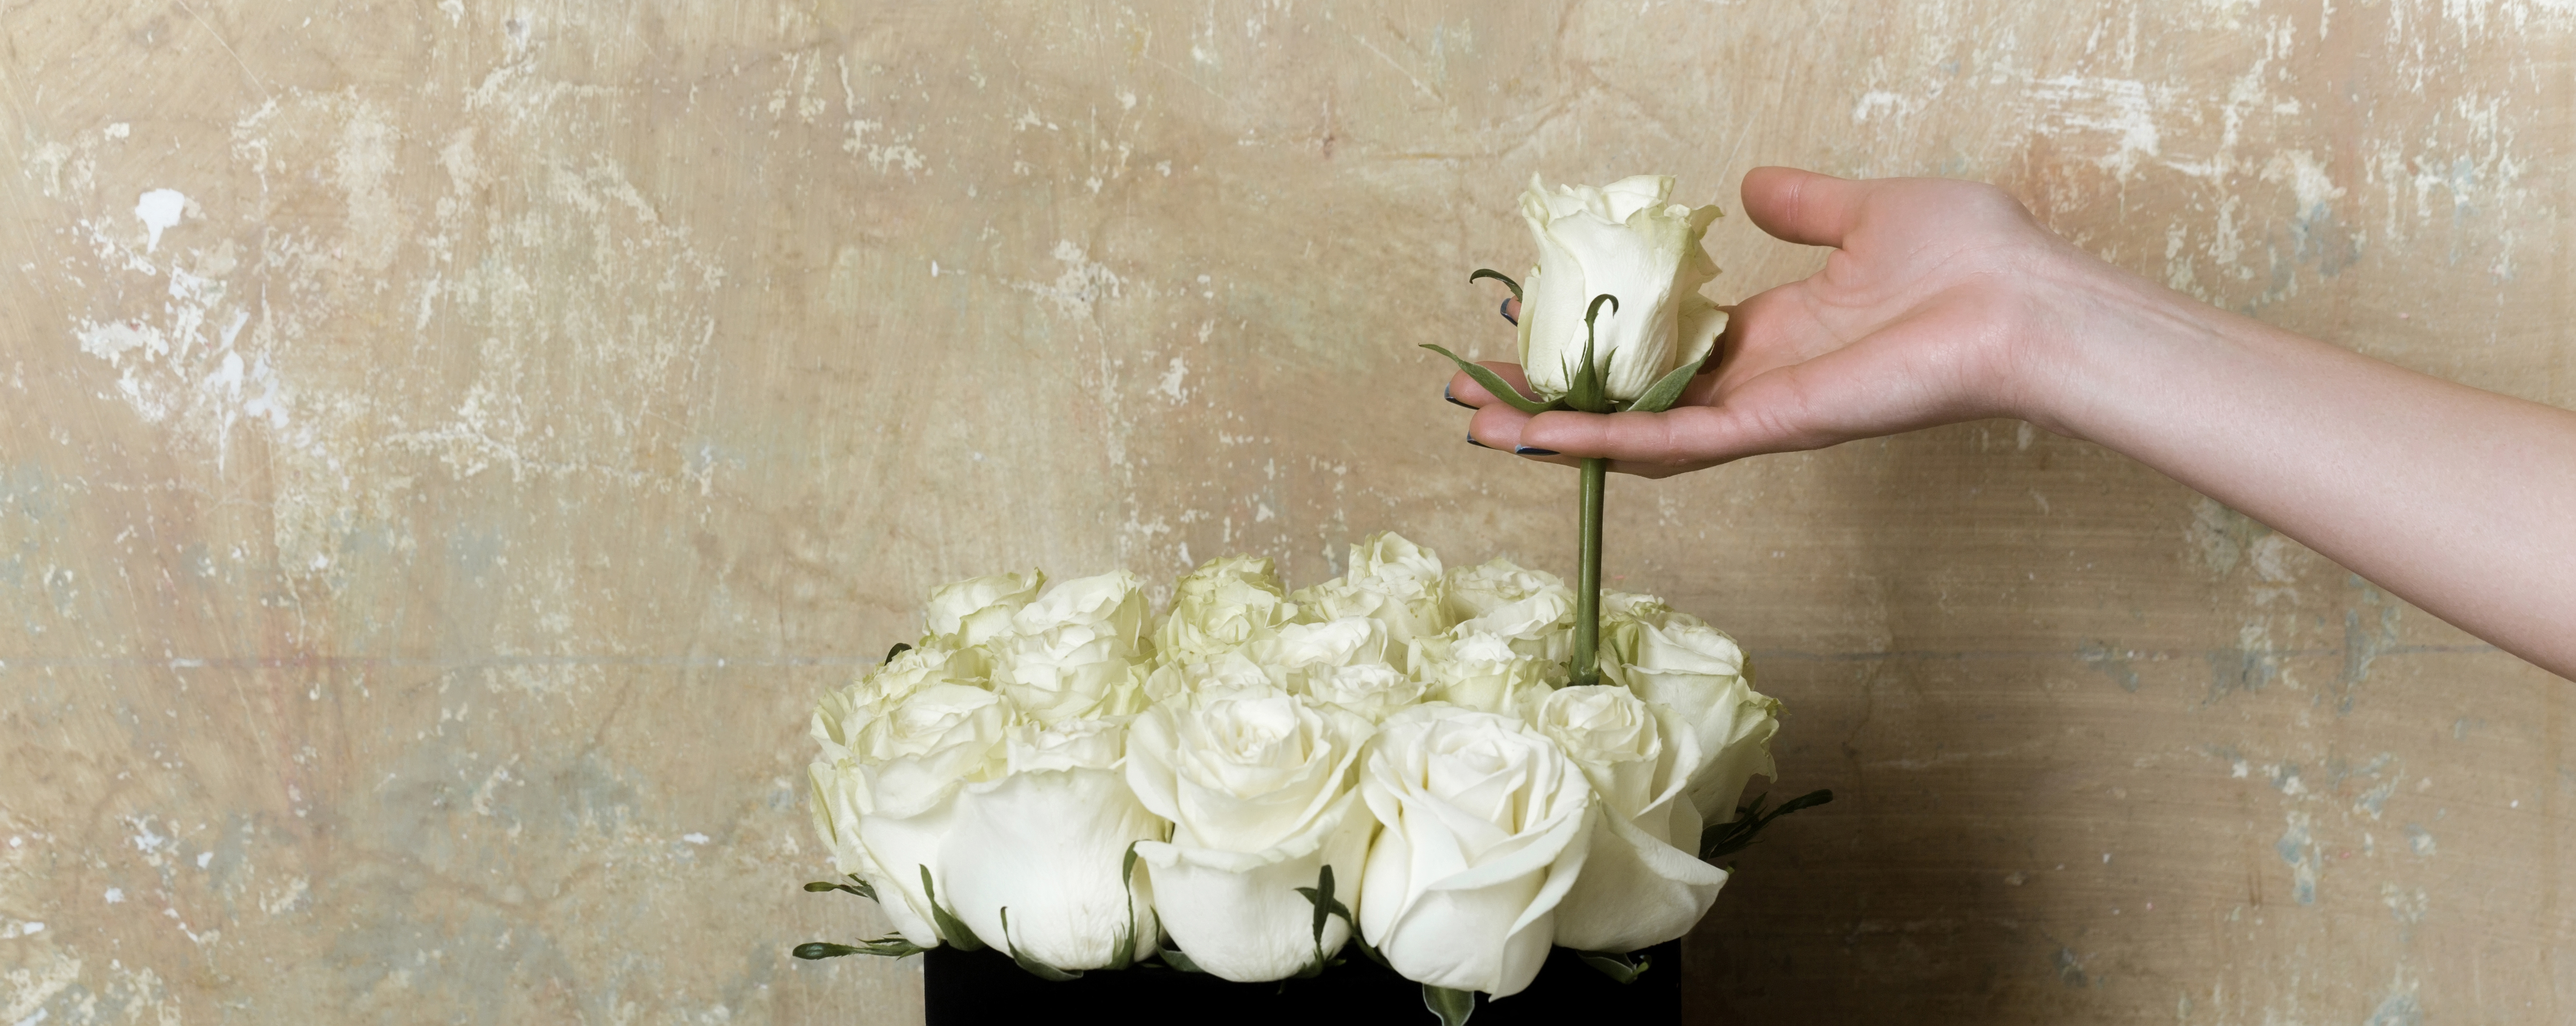 Veranderlijk Bedankt vacature De witte roos | Ad Patres